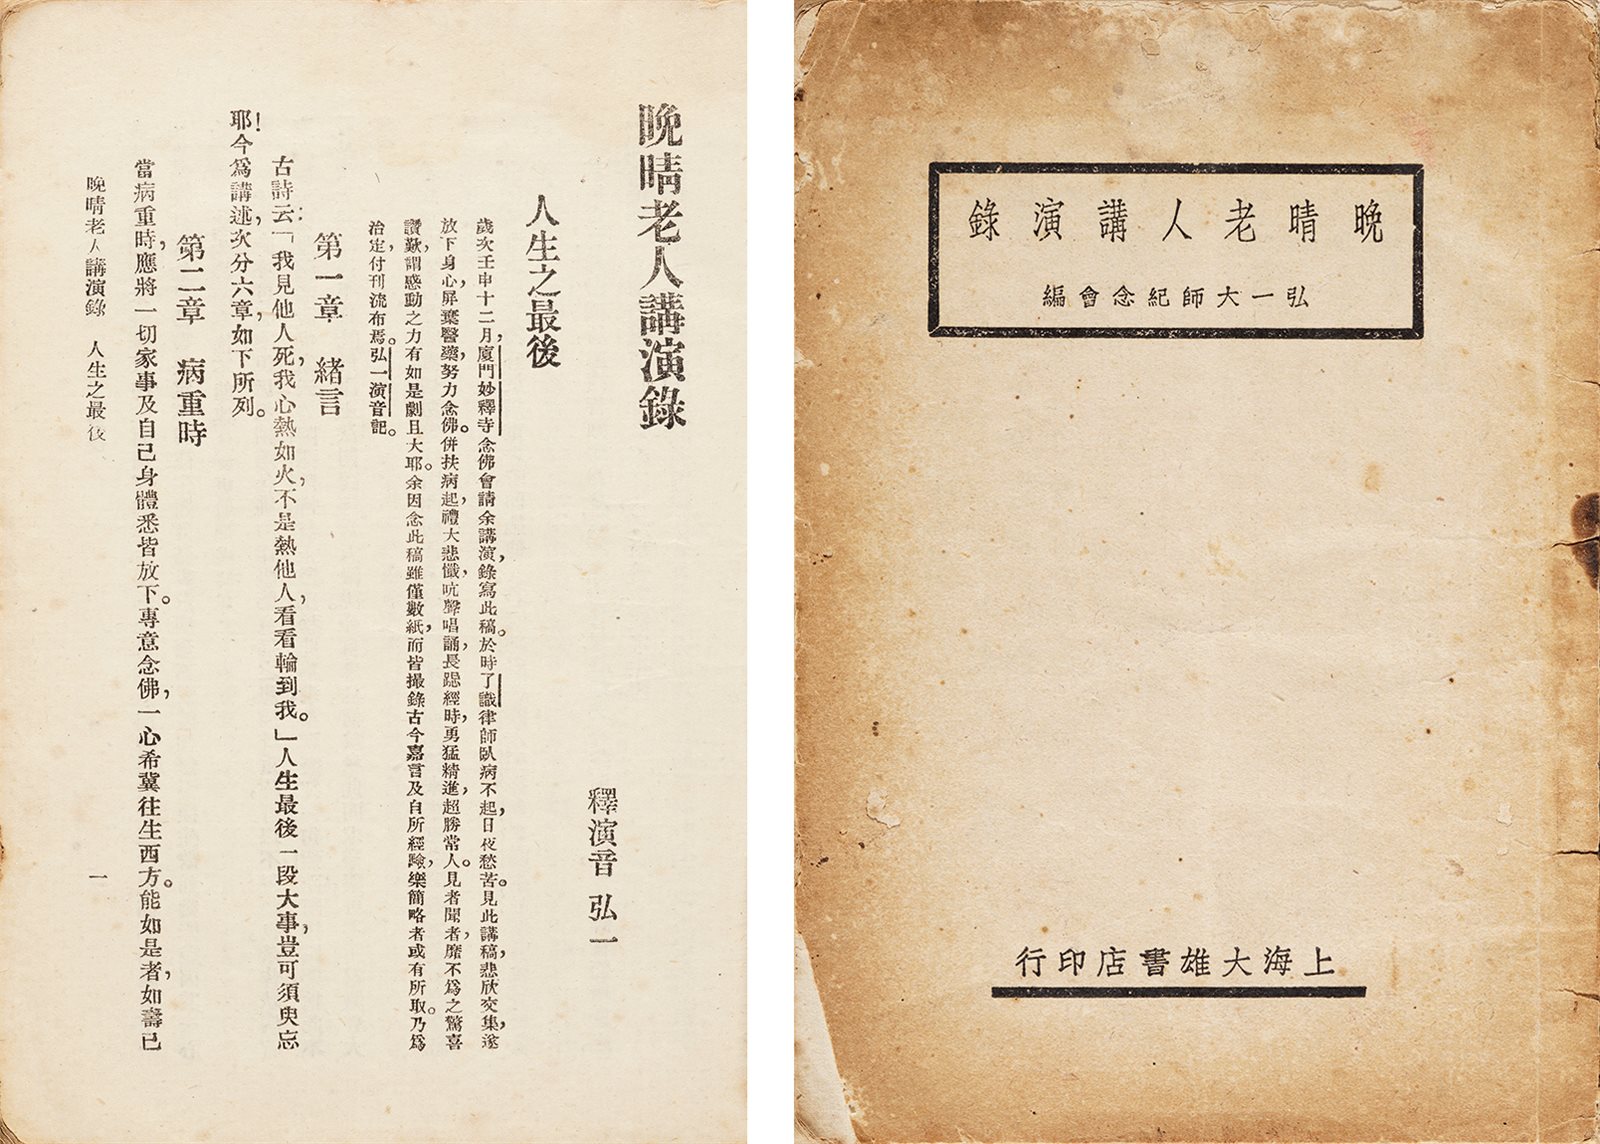 晚晴老人讲演录 民国三十三年（1944）上海大雄书店刊行